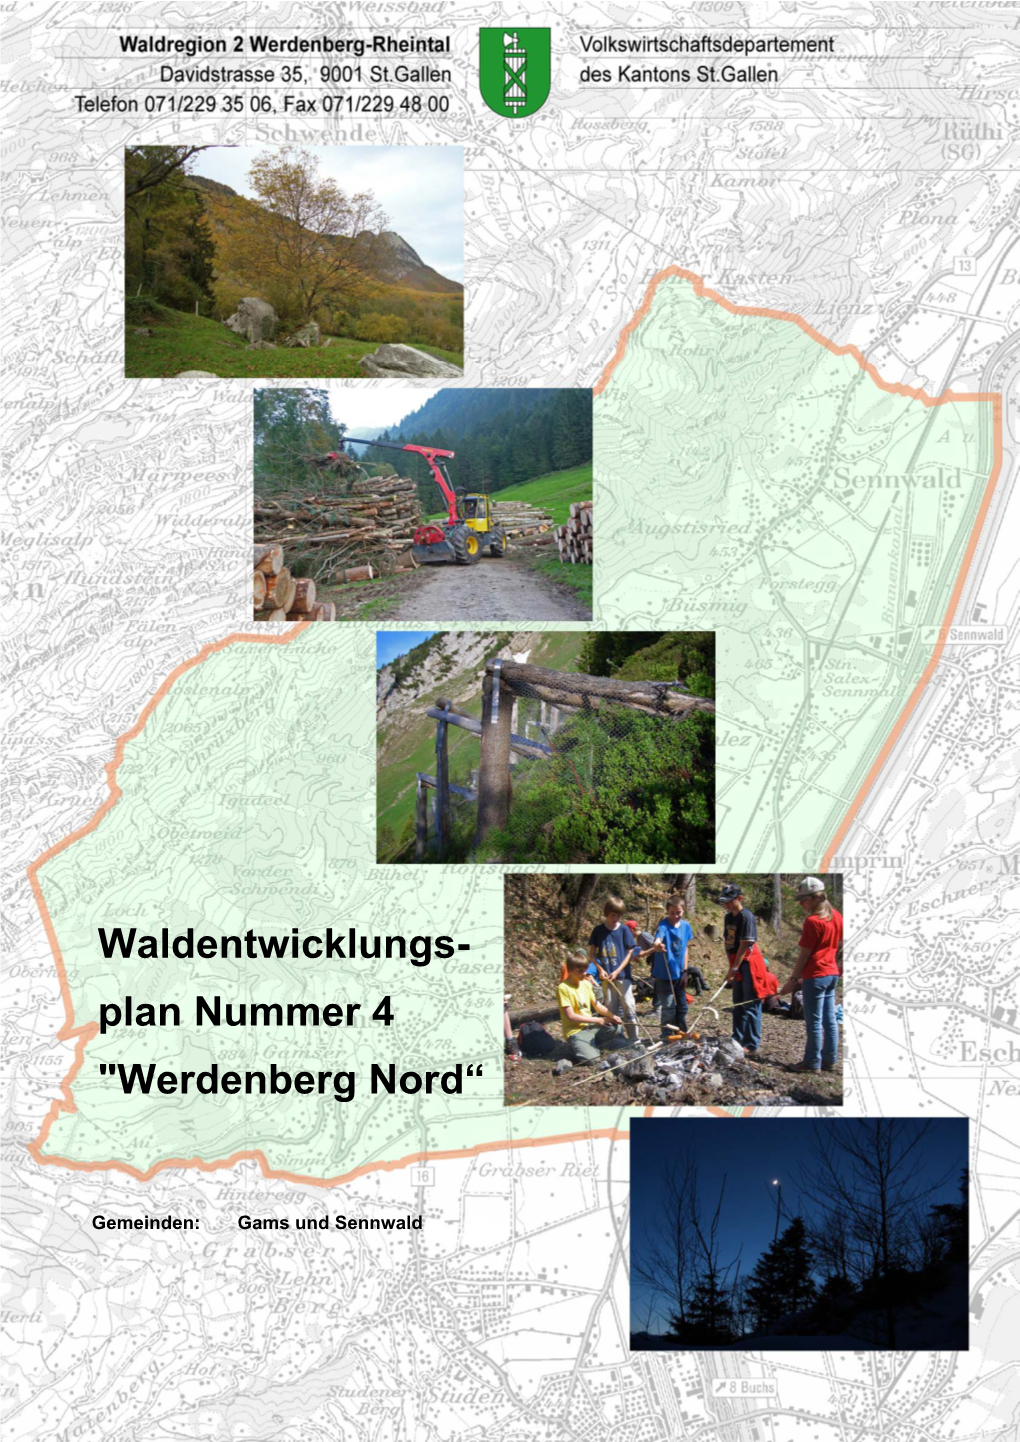 Waldentwicklungs- Plan Nummer 4 "Werdenberg Nord“